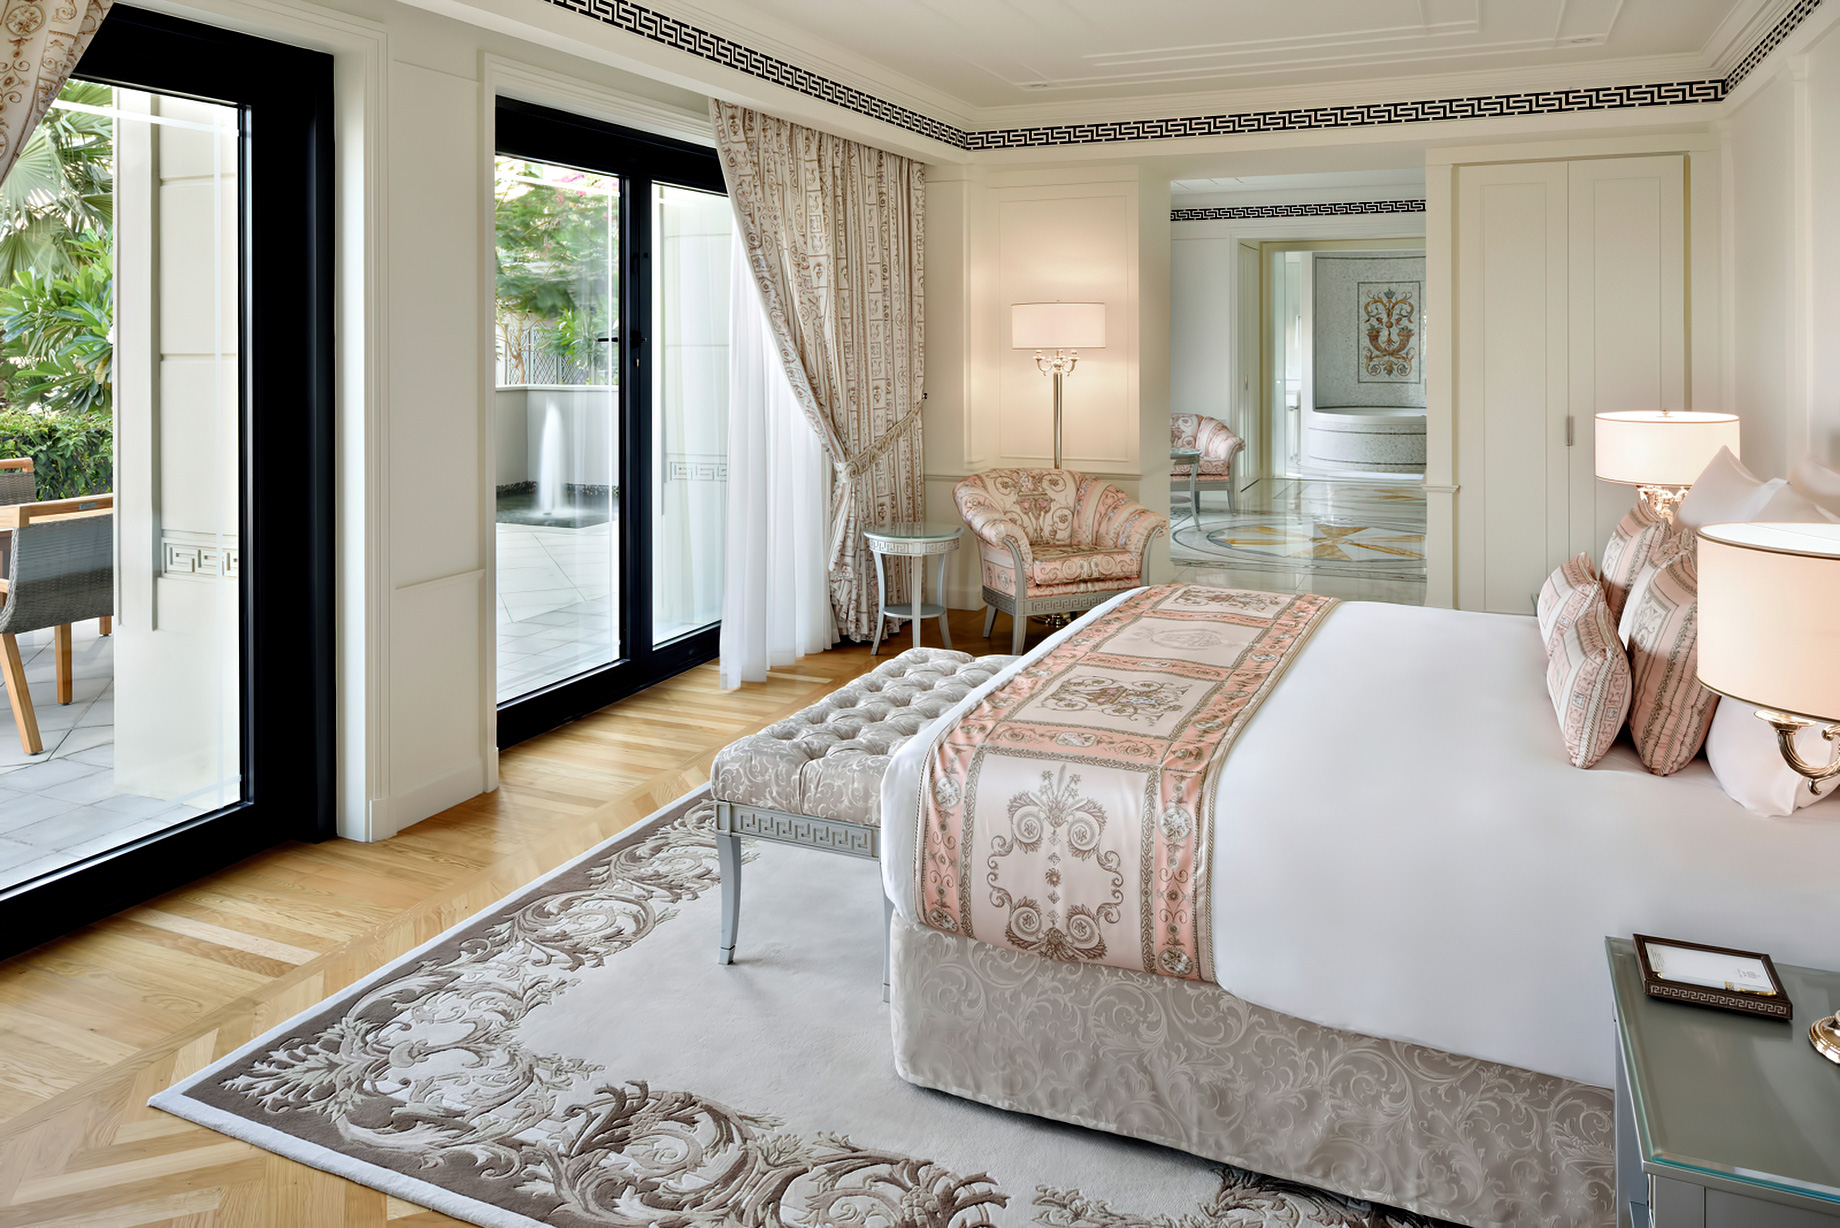 Palazzo Versace Dubai Hotel - Jaddaf Waterfront, Dubai, UAE - 6 Bedroom Residence Master Bedroom